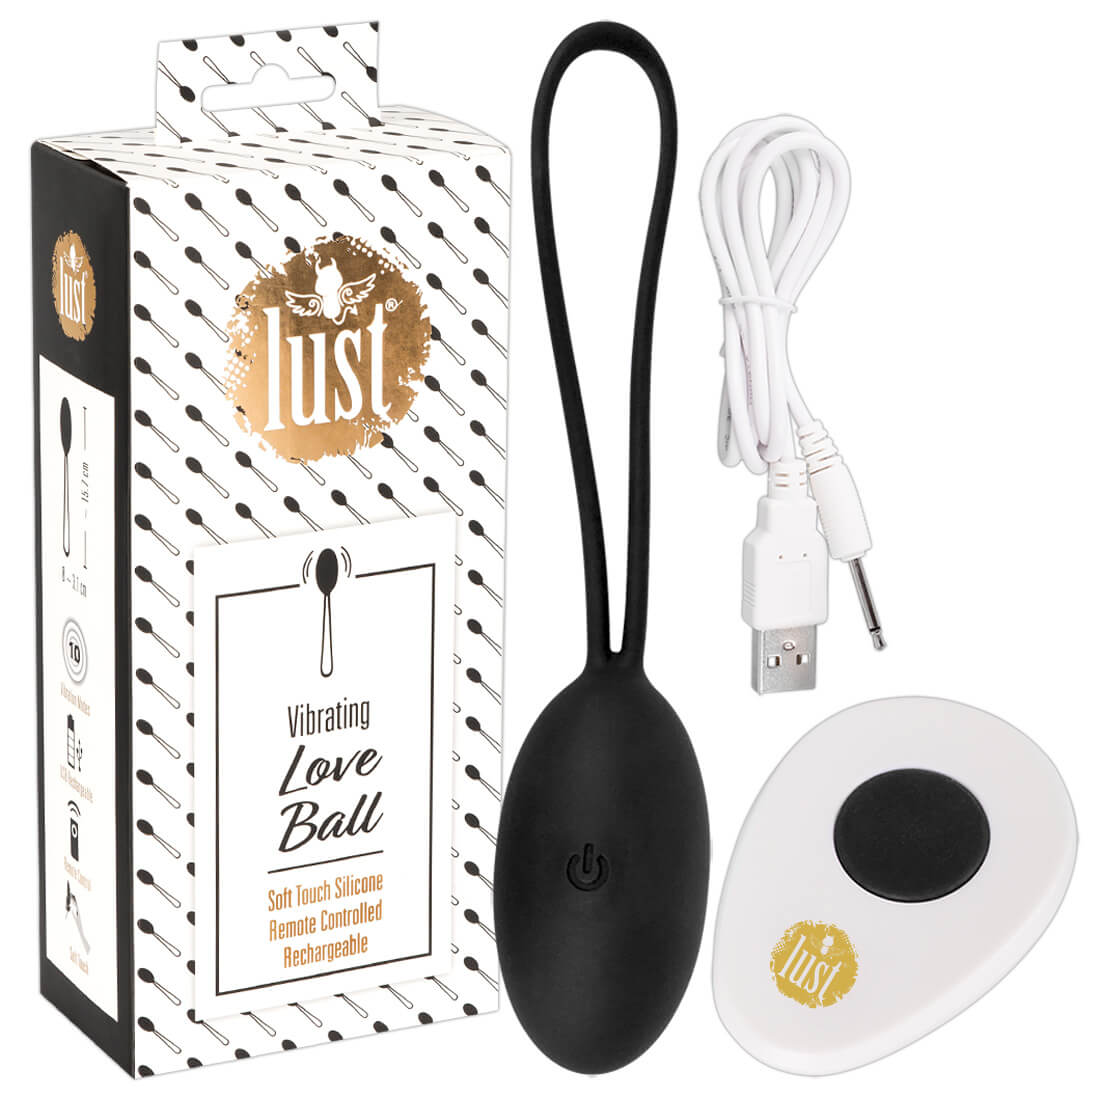 E-shop Lust Love Ball - nabíjacie vibračné vajíčko na diaľkové ovládanie (čierne)